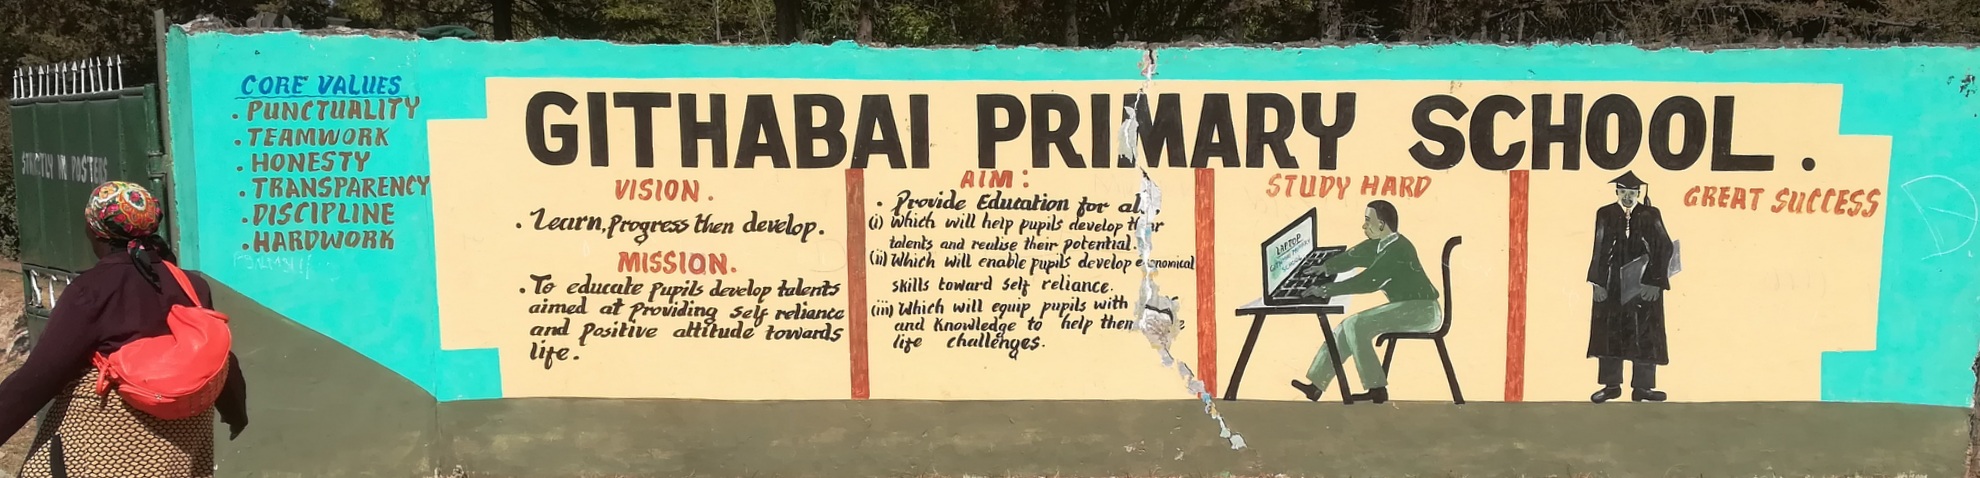 2018 primary school visioner på mur (1)